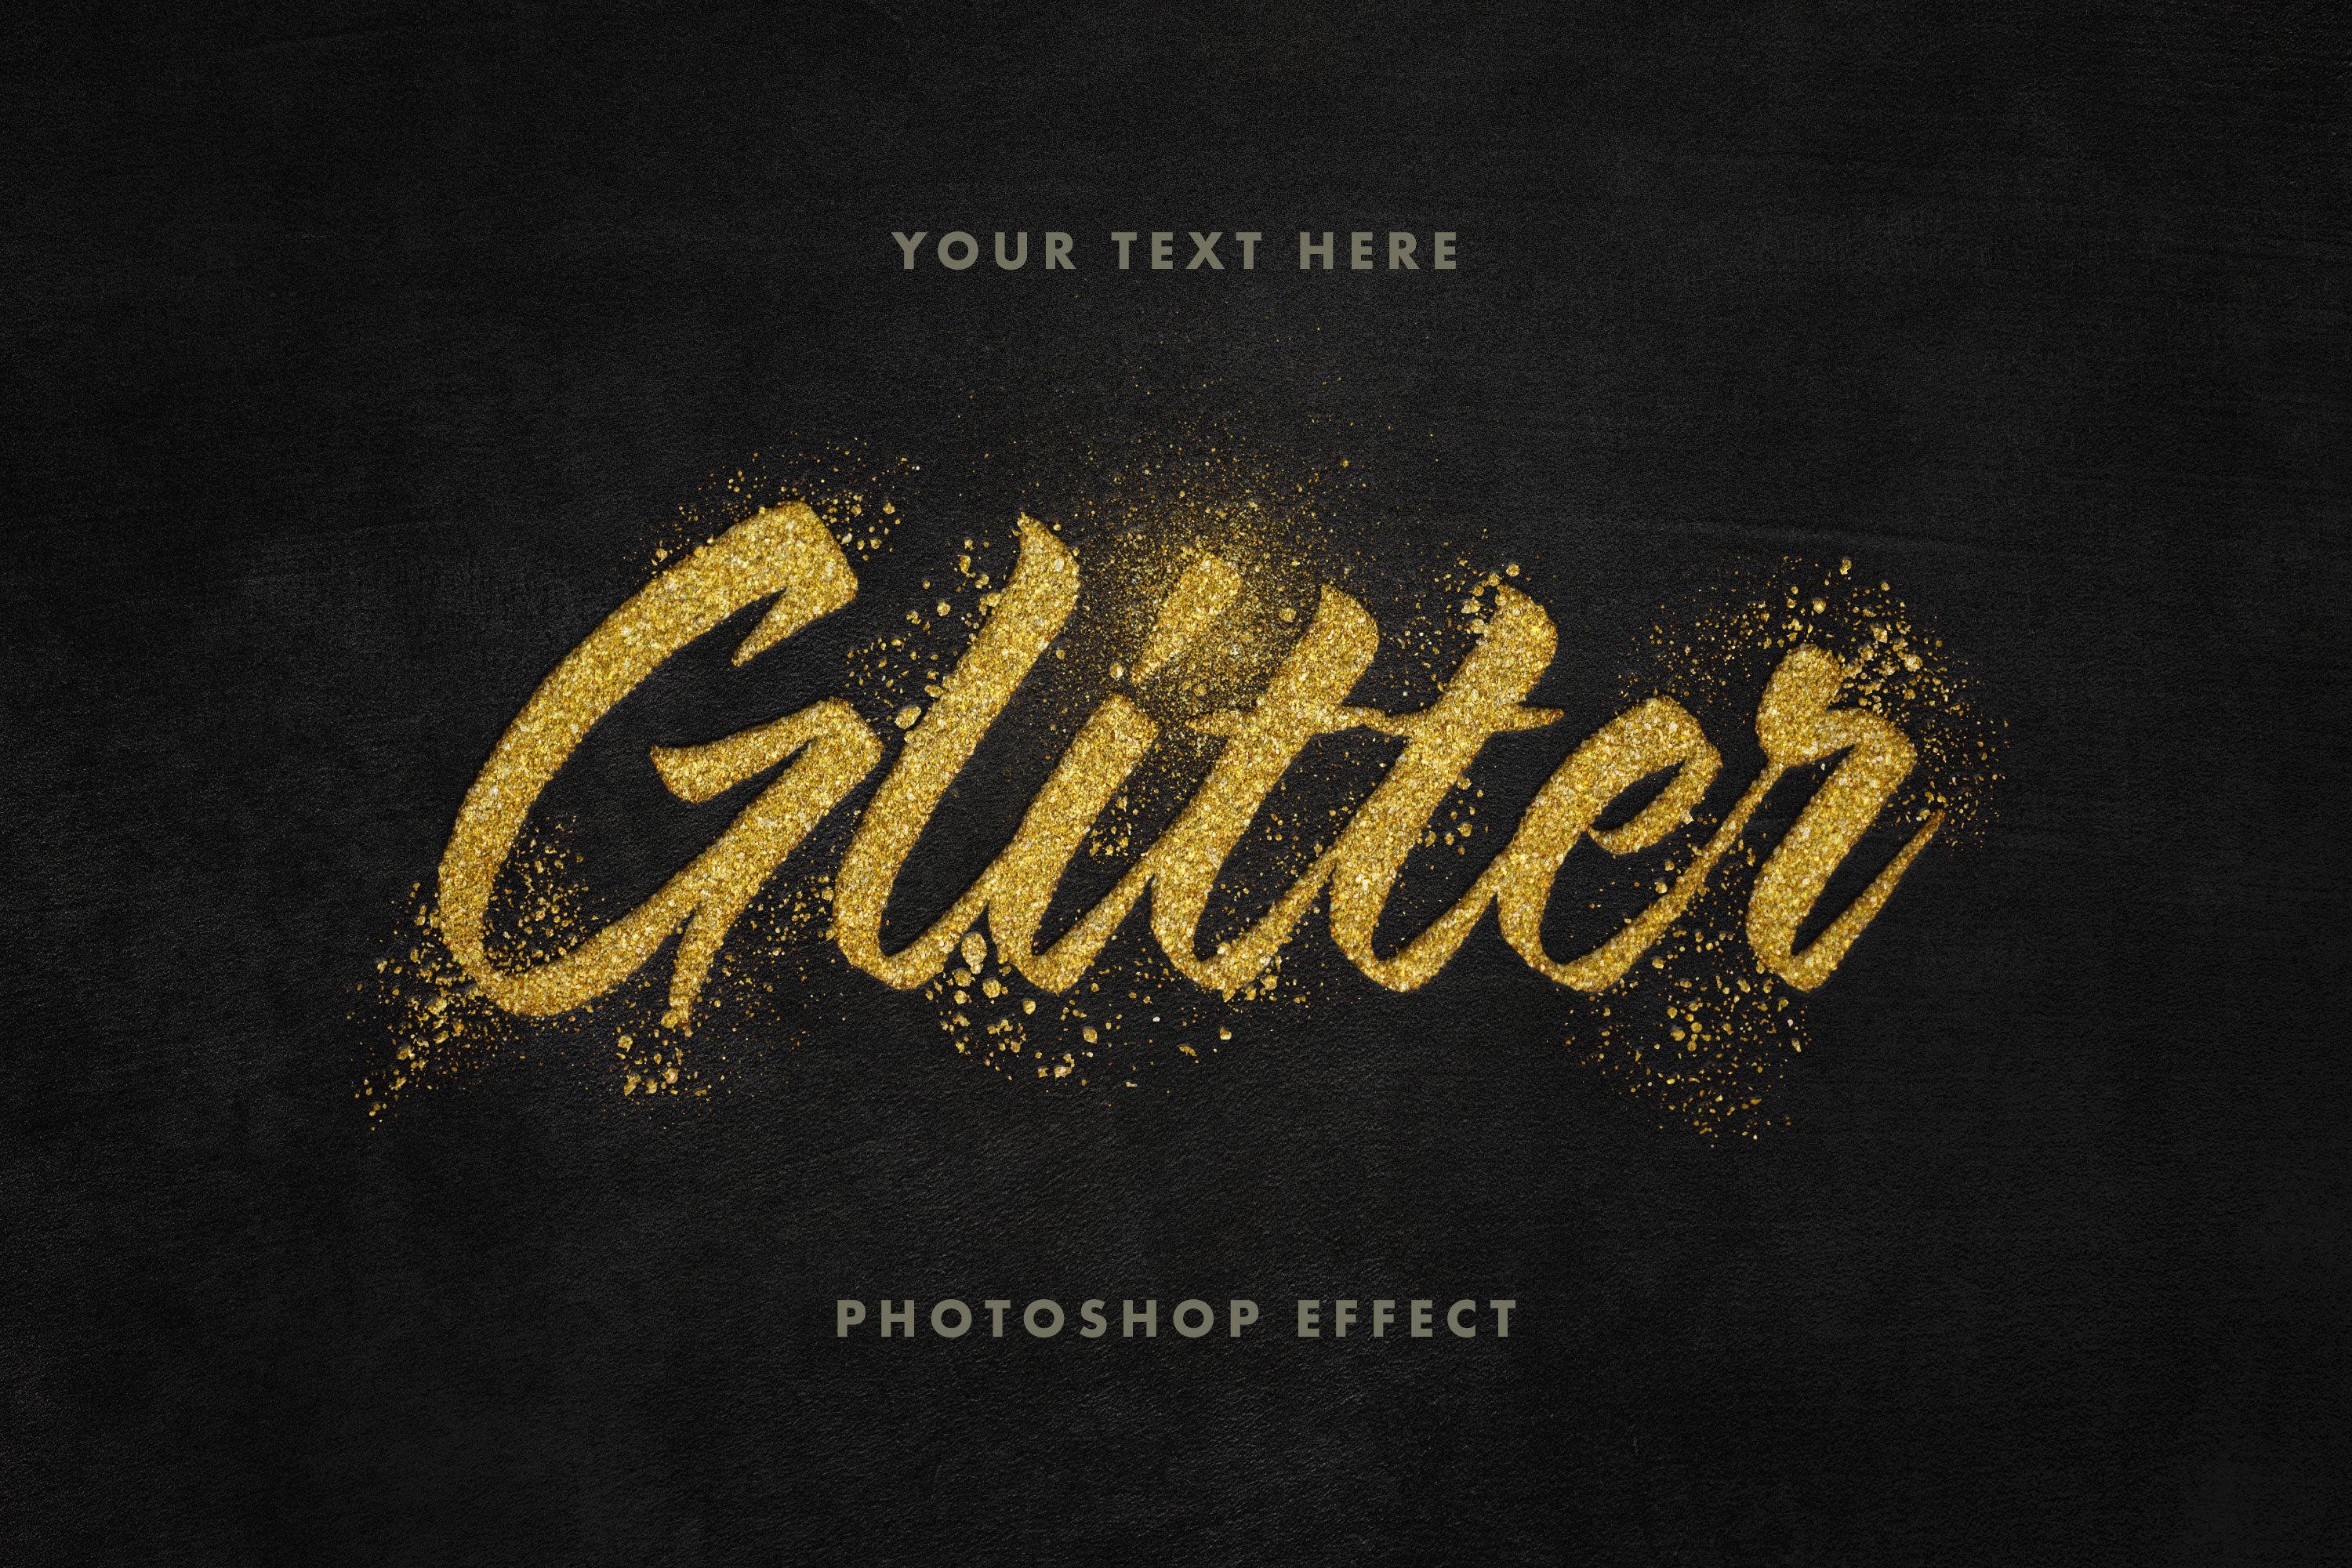 Golden Glitter Text Effectcover image.